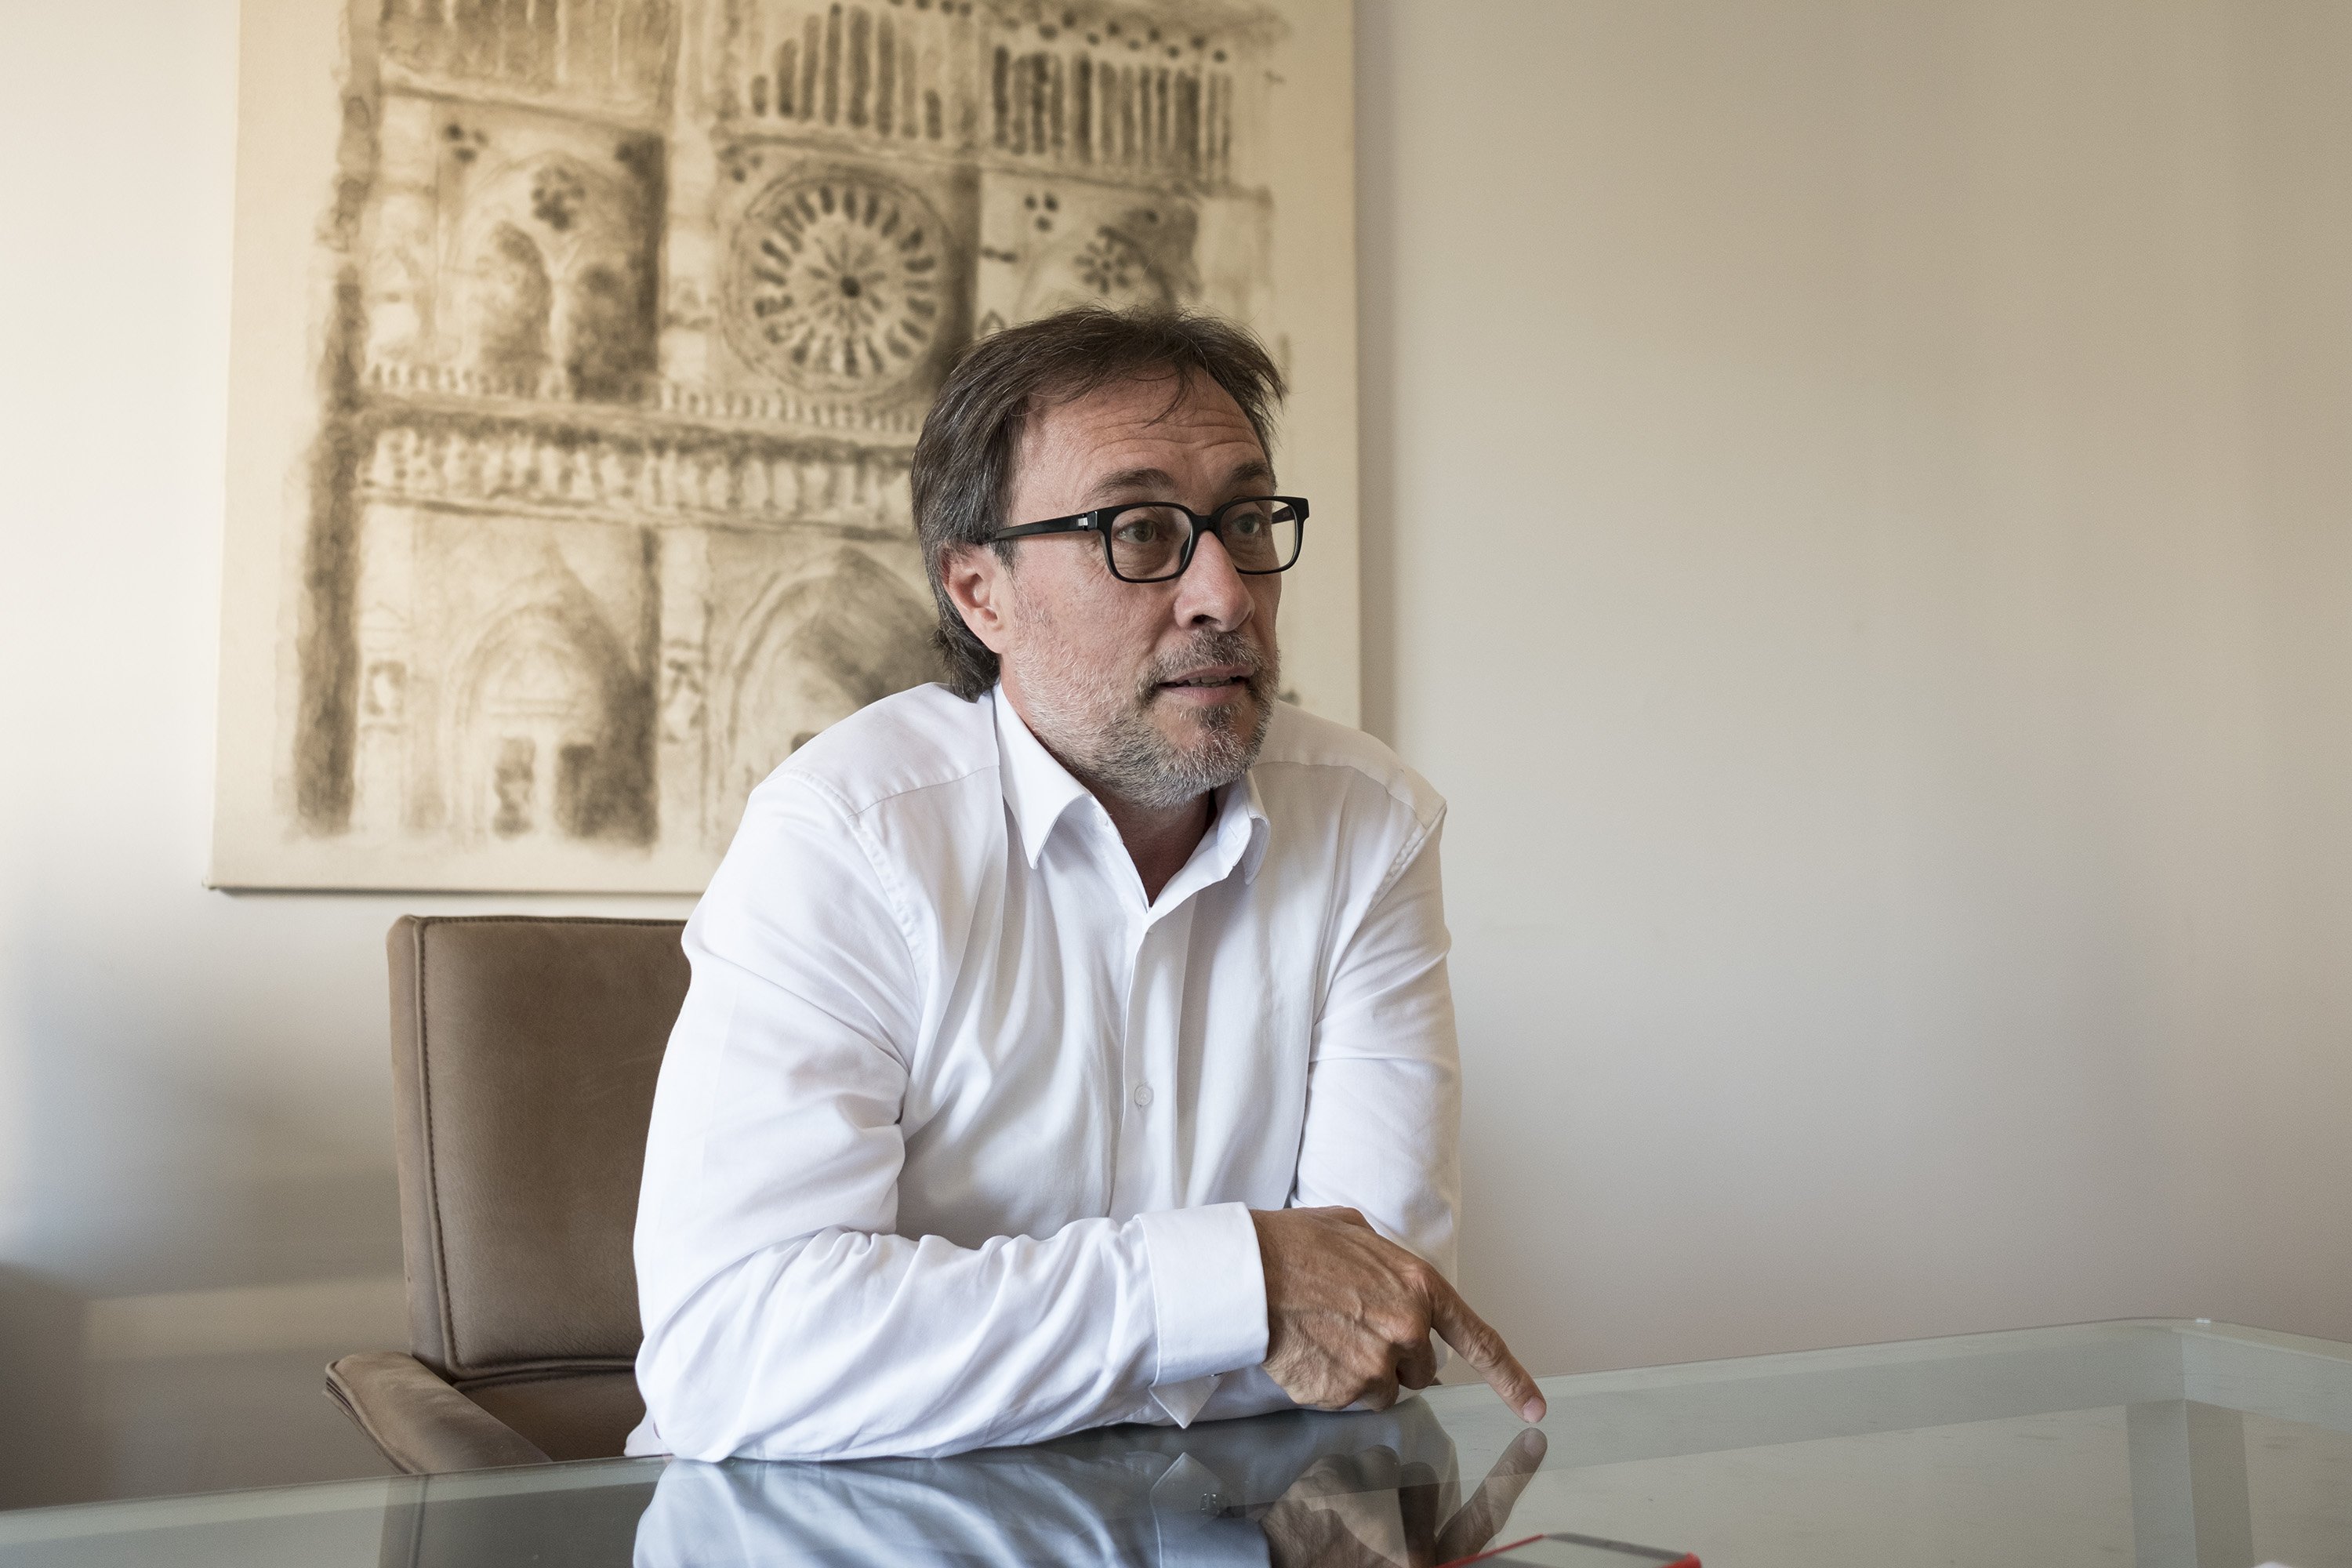 Benedito reclama una rectificació pública del portaveu del Barça